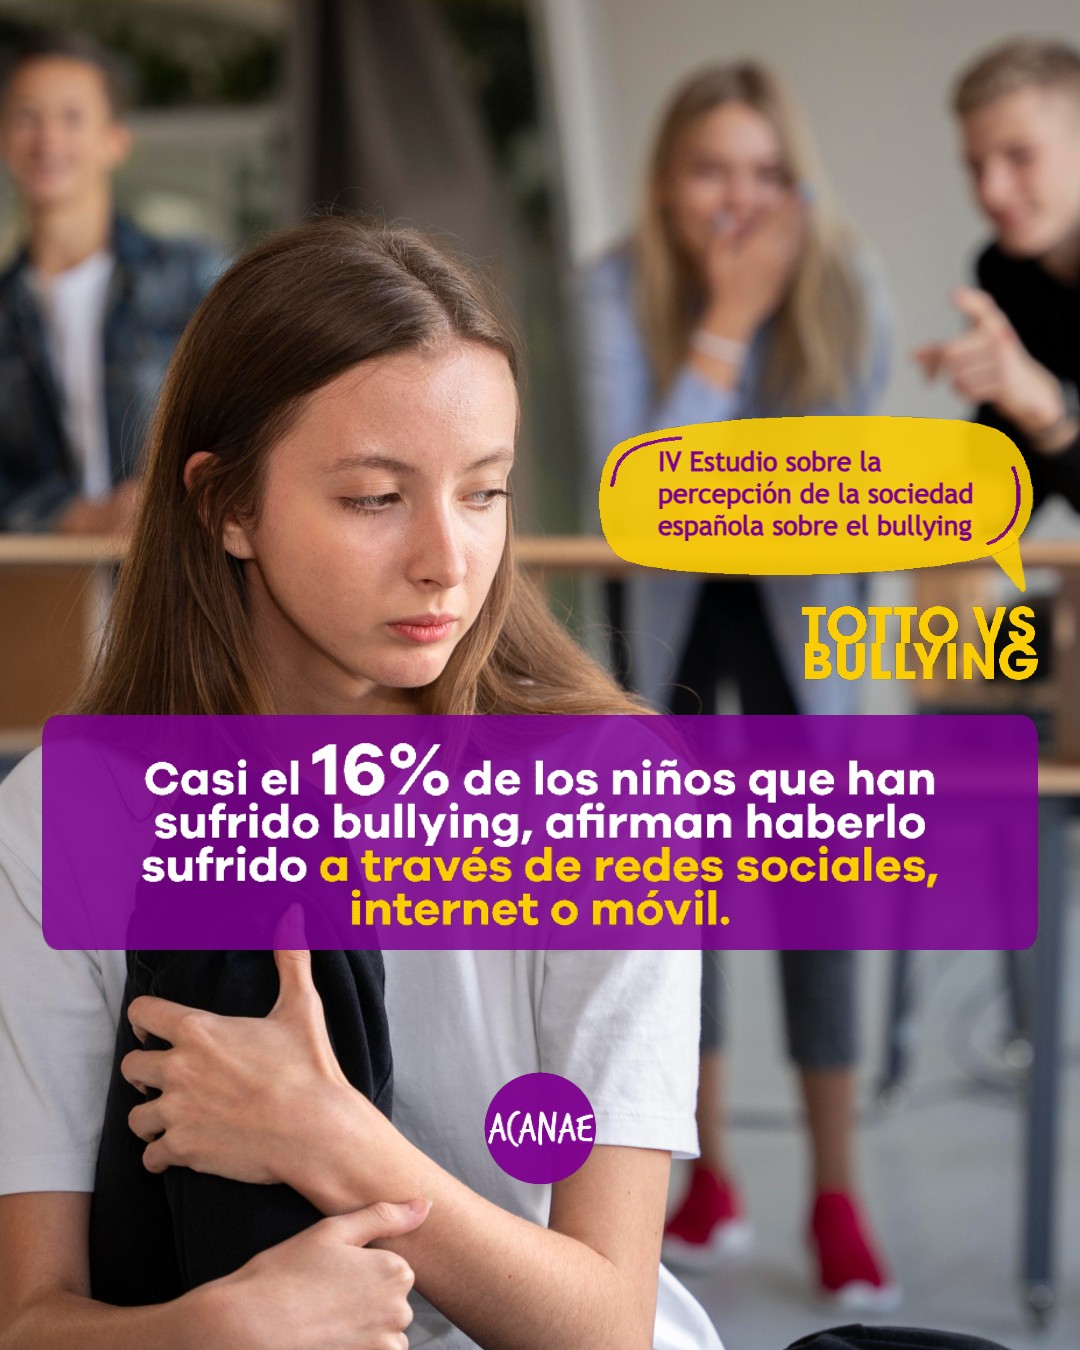 Casi el 16% de los niños que han sufrido bullying, afirman haberlo sufrido a través de redes sociales, Internet o móvil.